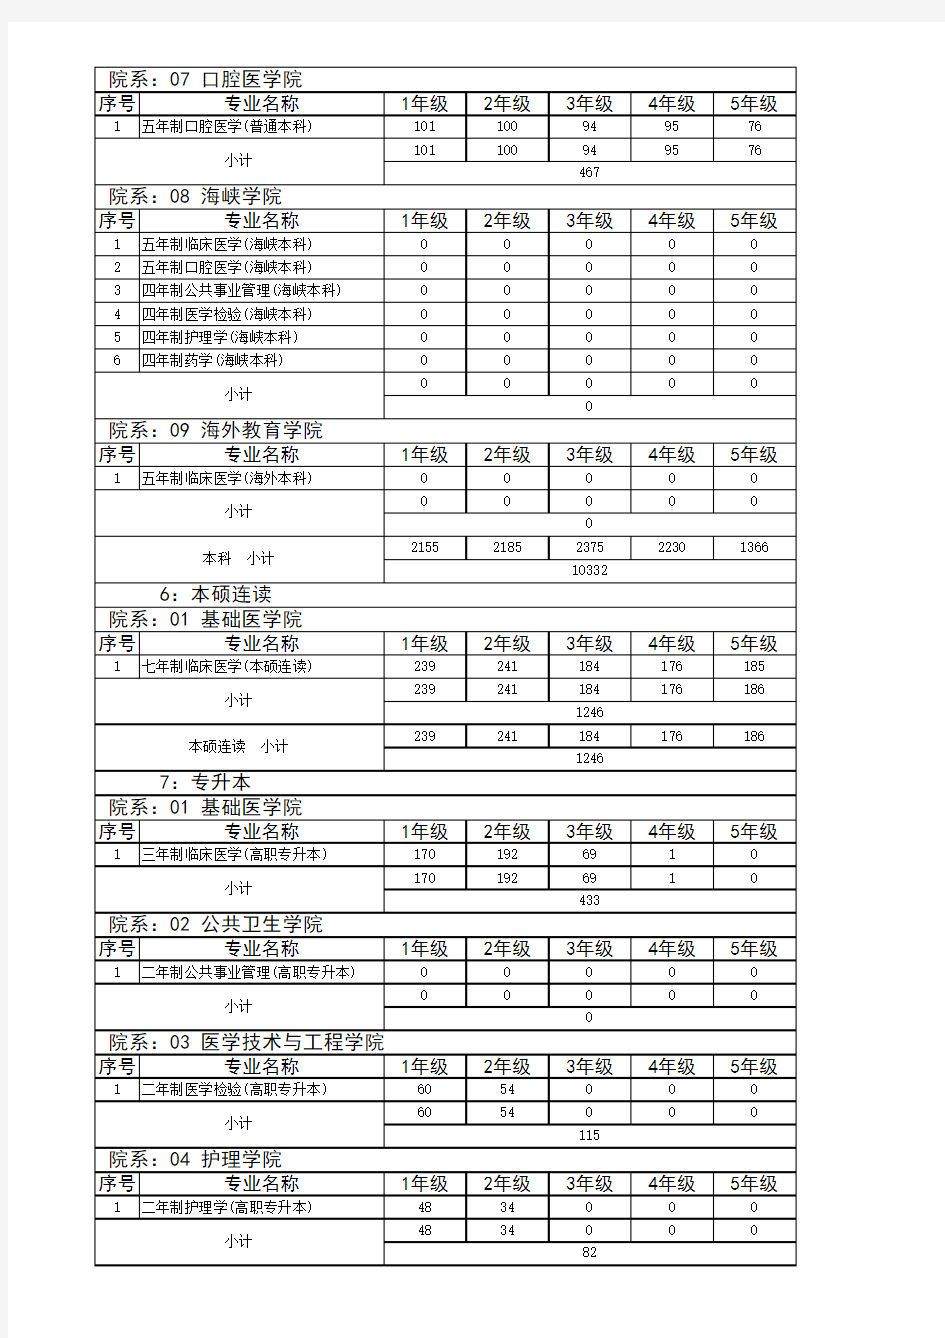 福建医科大学在校人数统计表2011.2.25